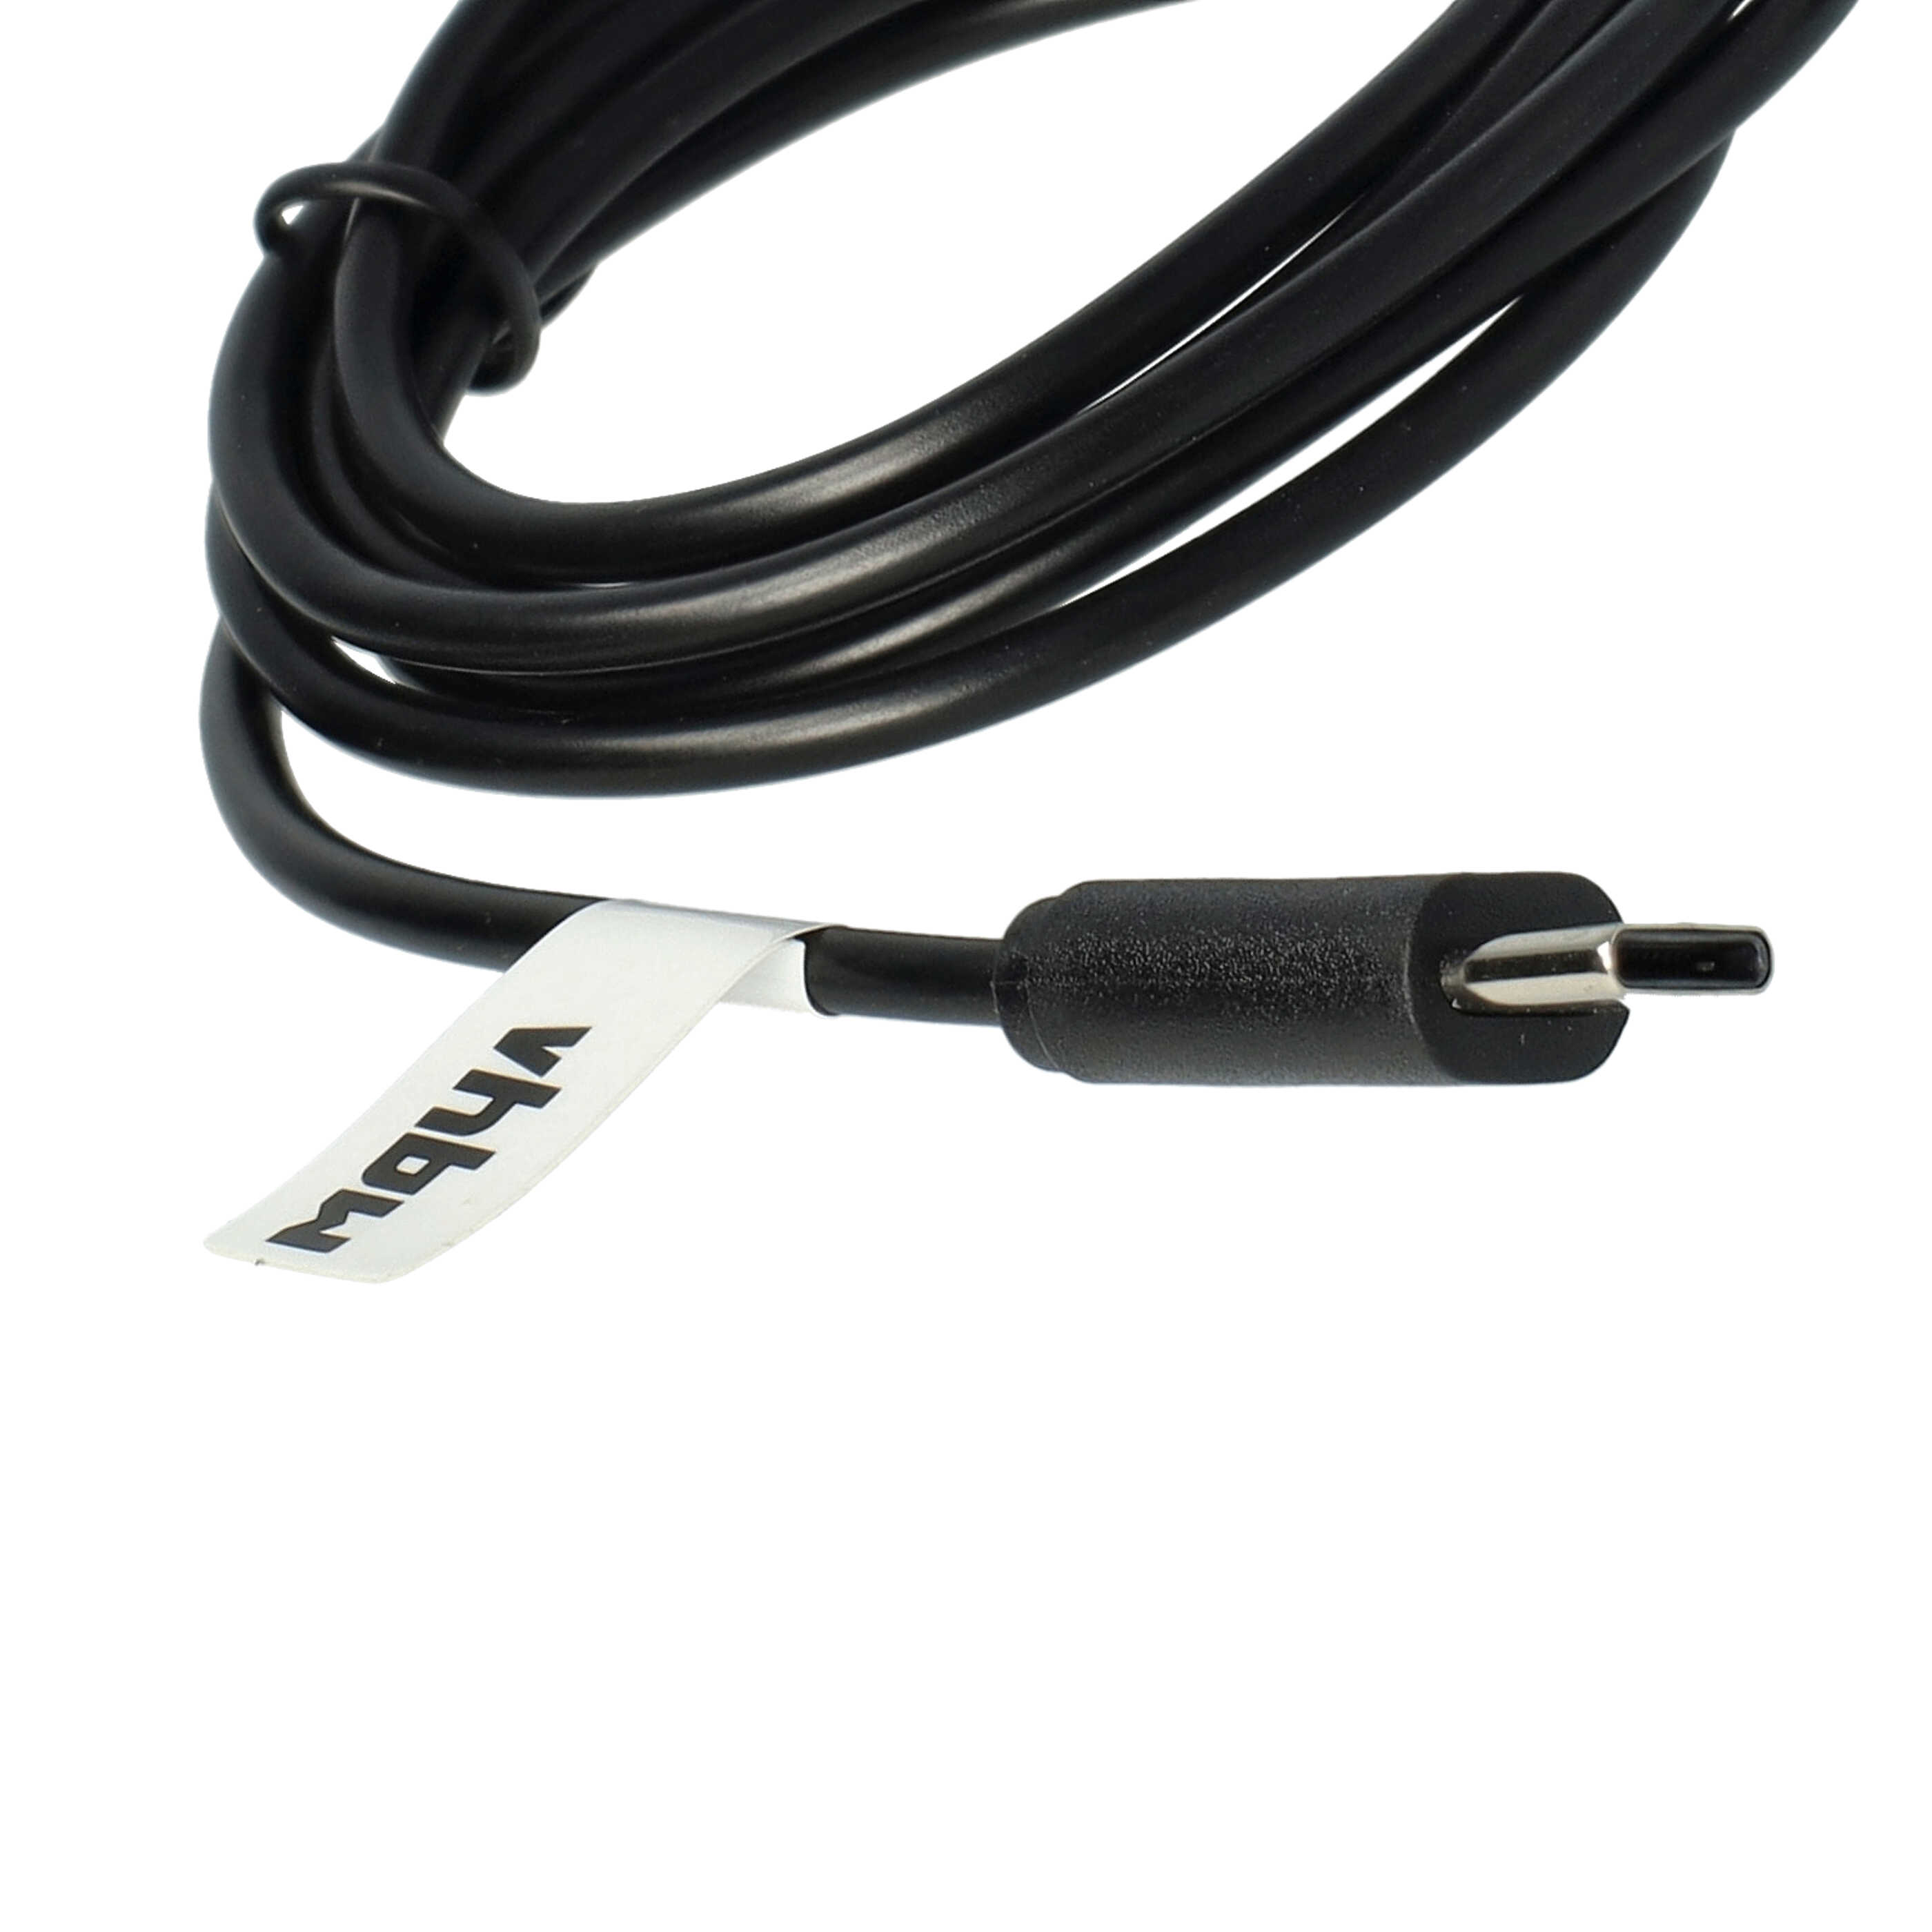 Cable de carga USB reemplaza Garmin 010-13289-00 para smartwatch Garmin - negro 100 cm